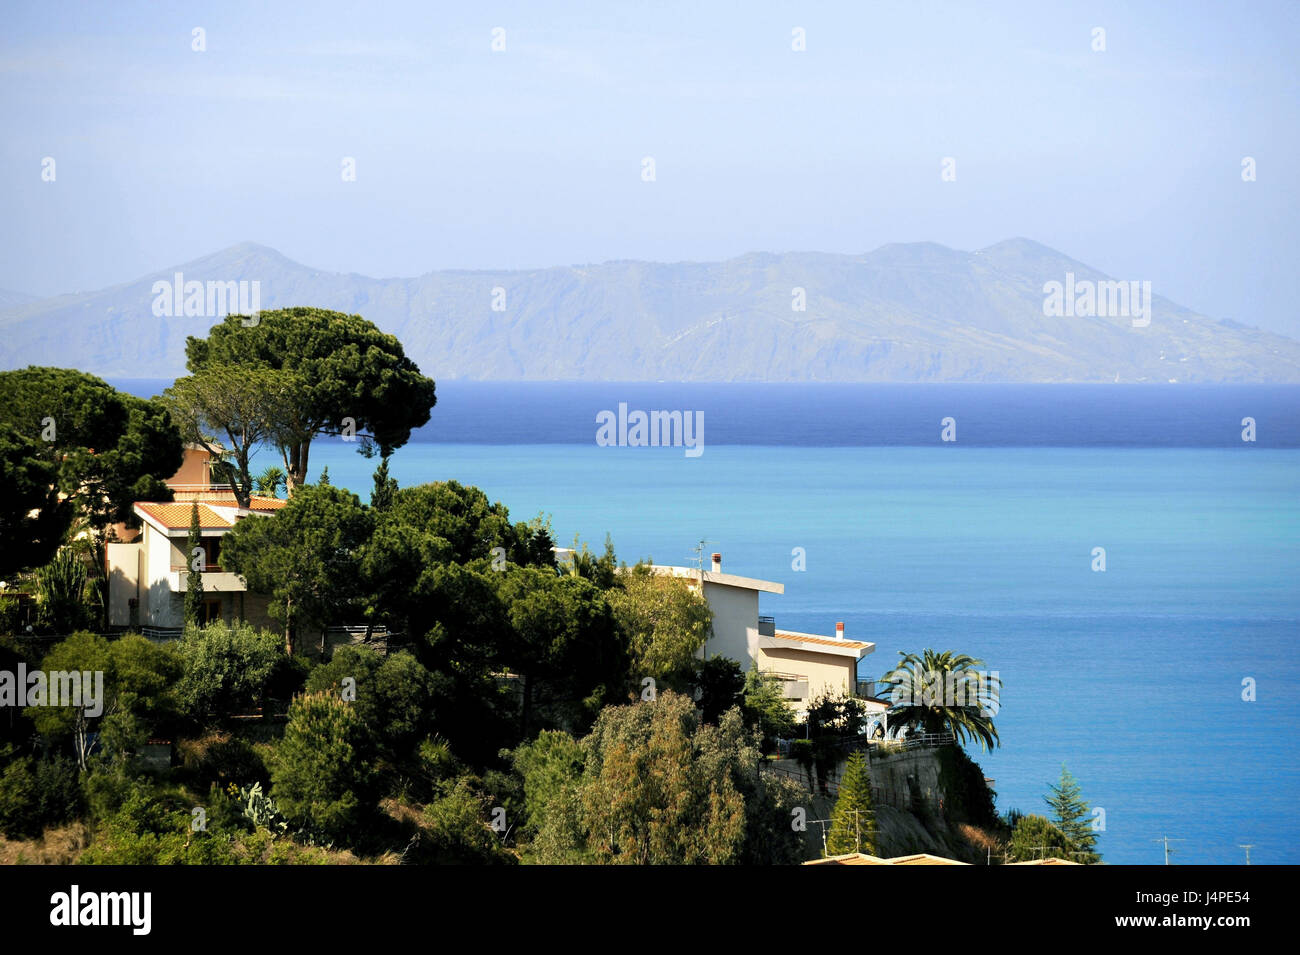 Italy, Sicily, coast, trees, houses, Ionian sea, Stock Photo